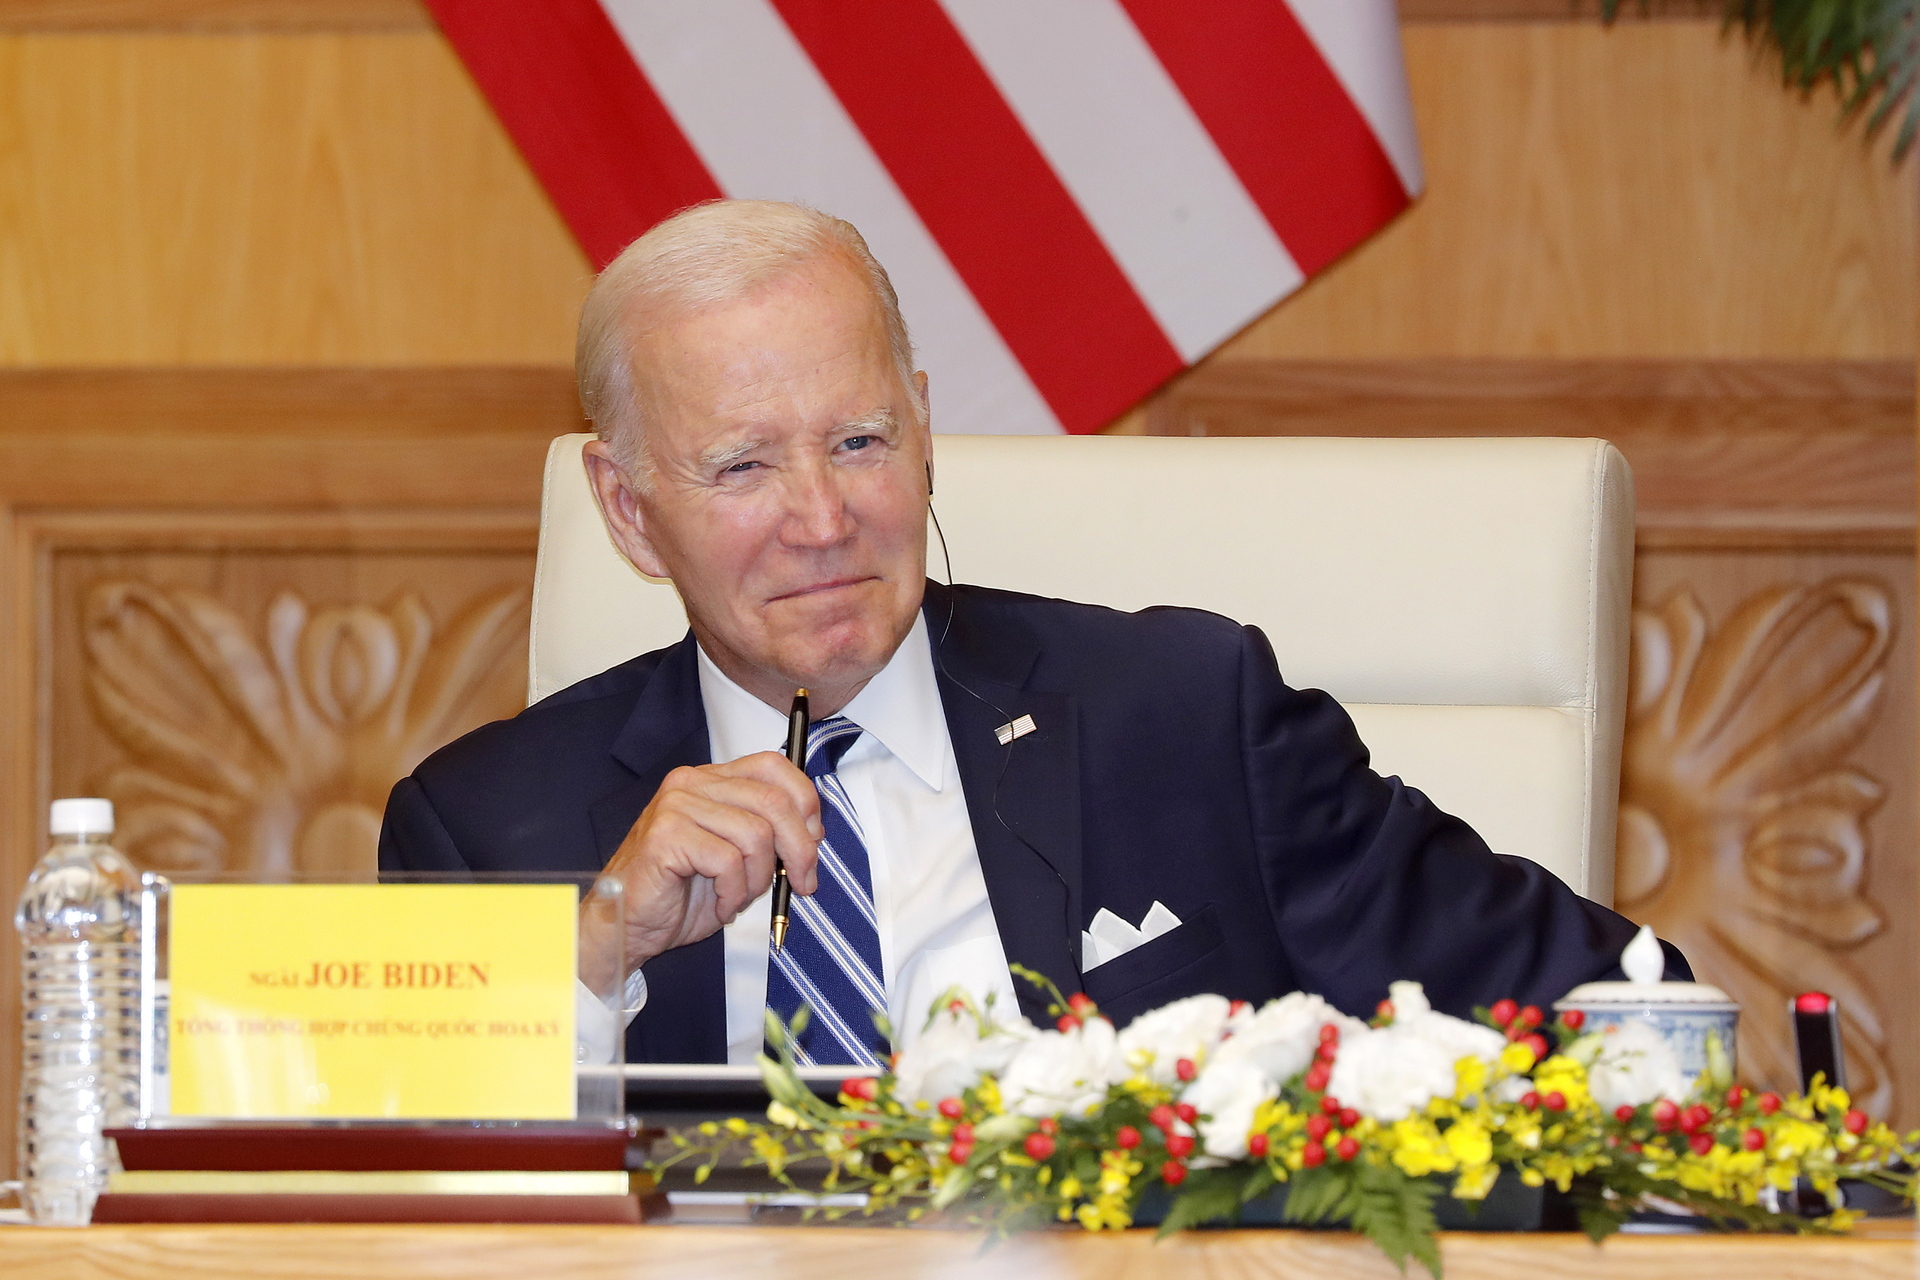 Puntos clave de la apertura de juicio político contra Joe Biden